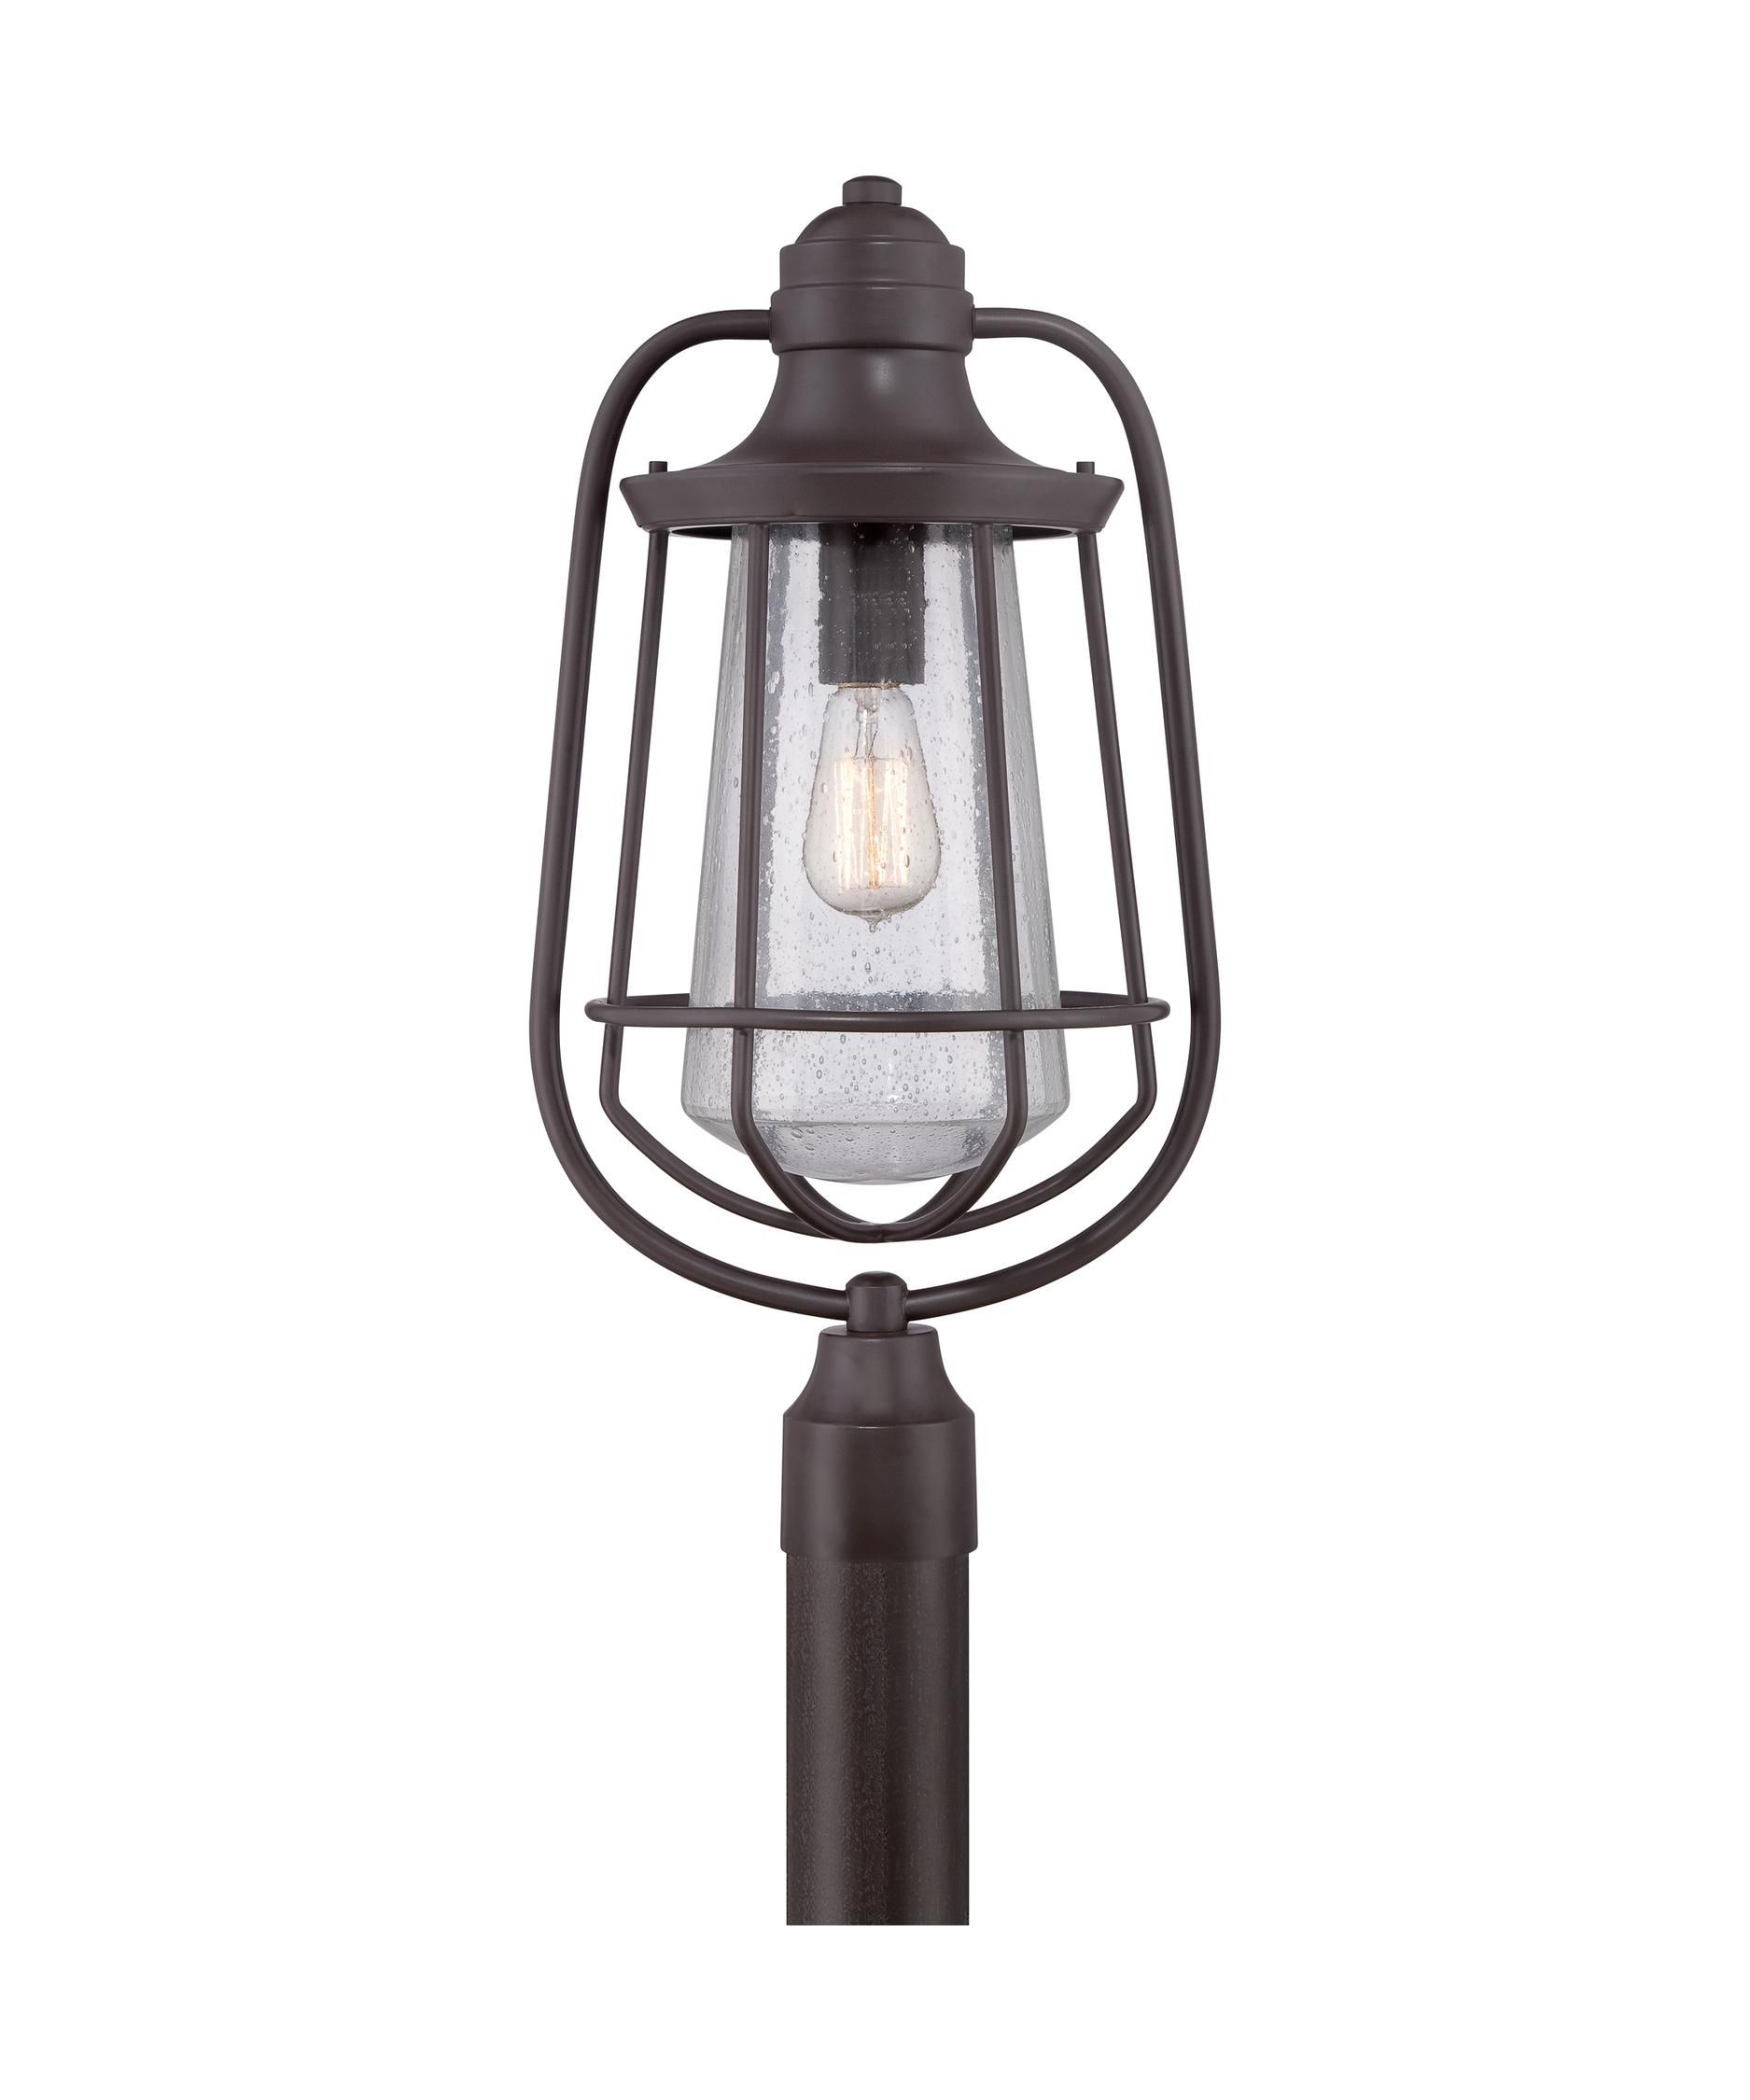 Outdoor Light : Outdoor Lamp Posts Costco , Outdoor Light Post Regarding Outdoor Lanterns For Posts (Photo 9 of 20)